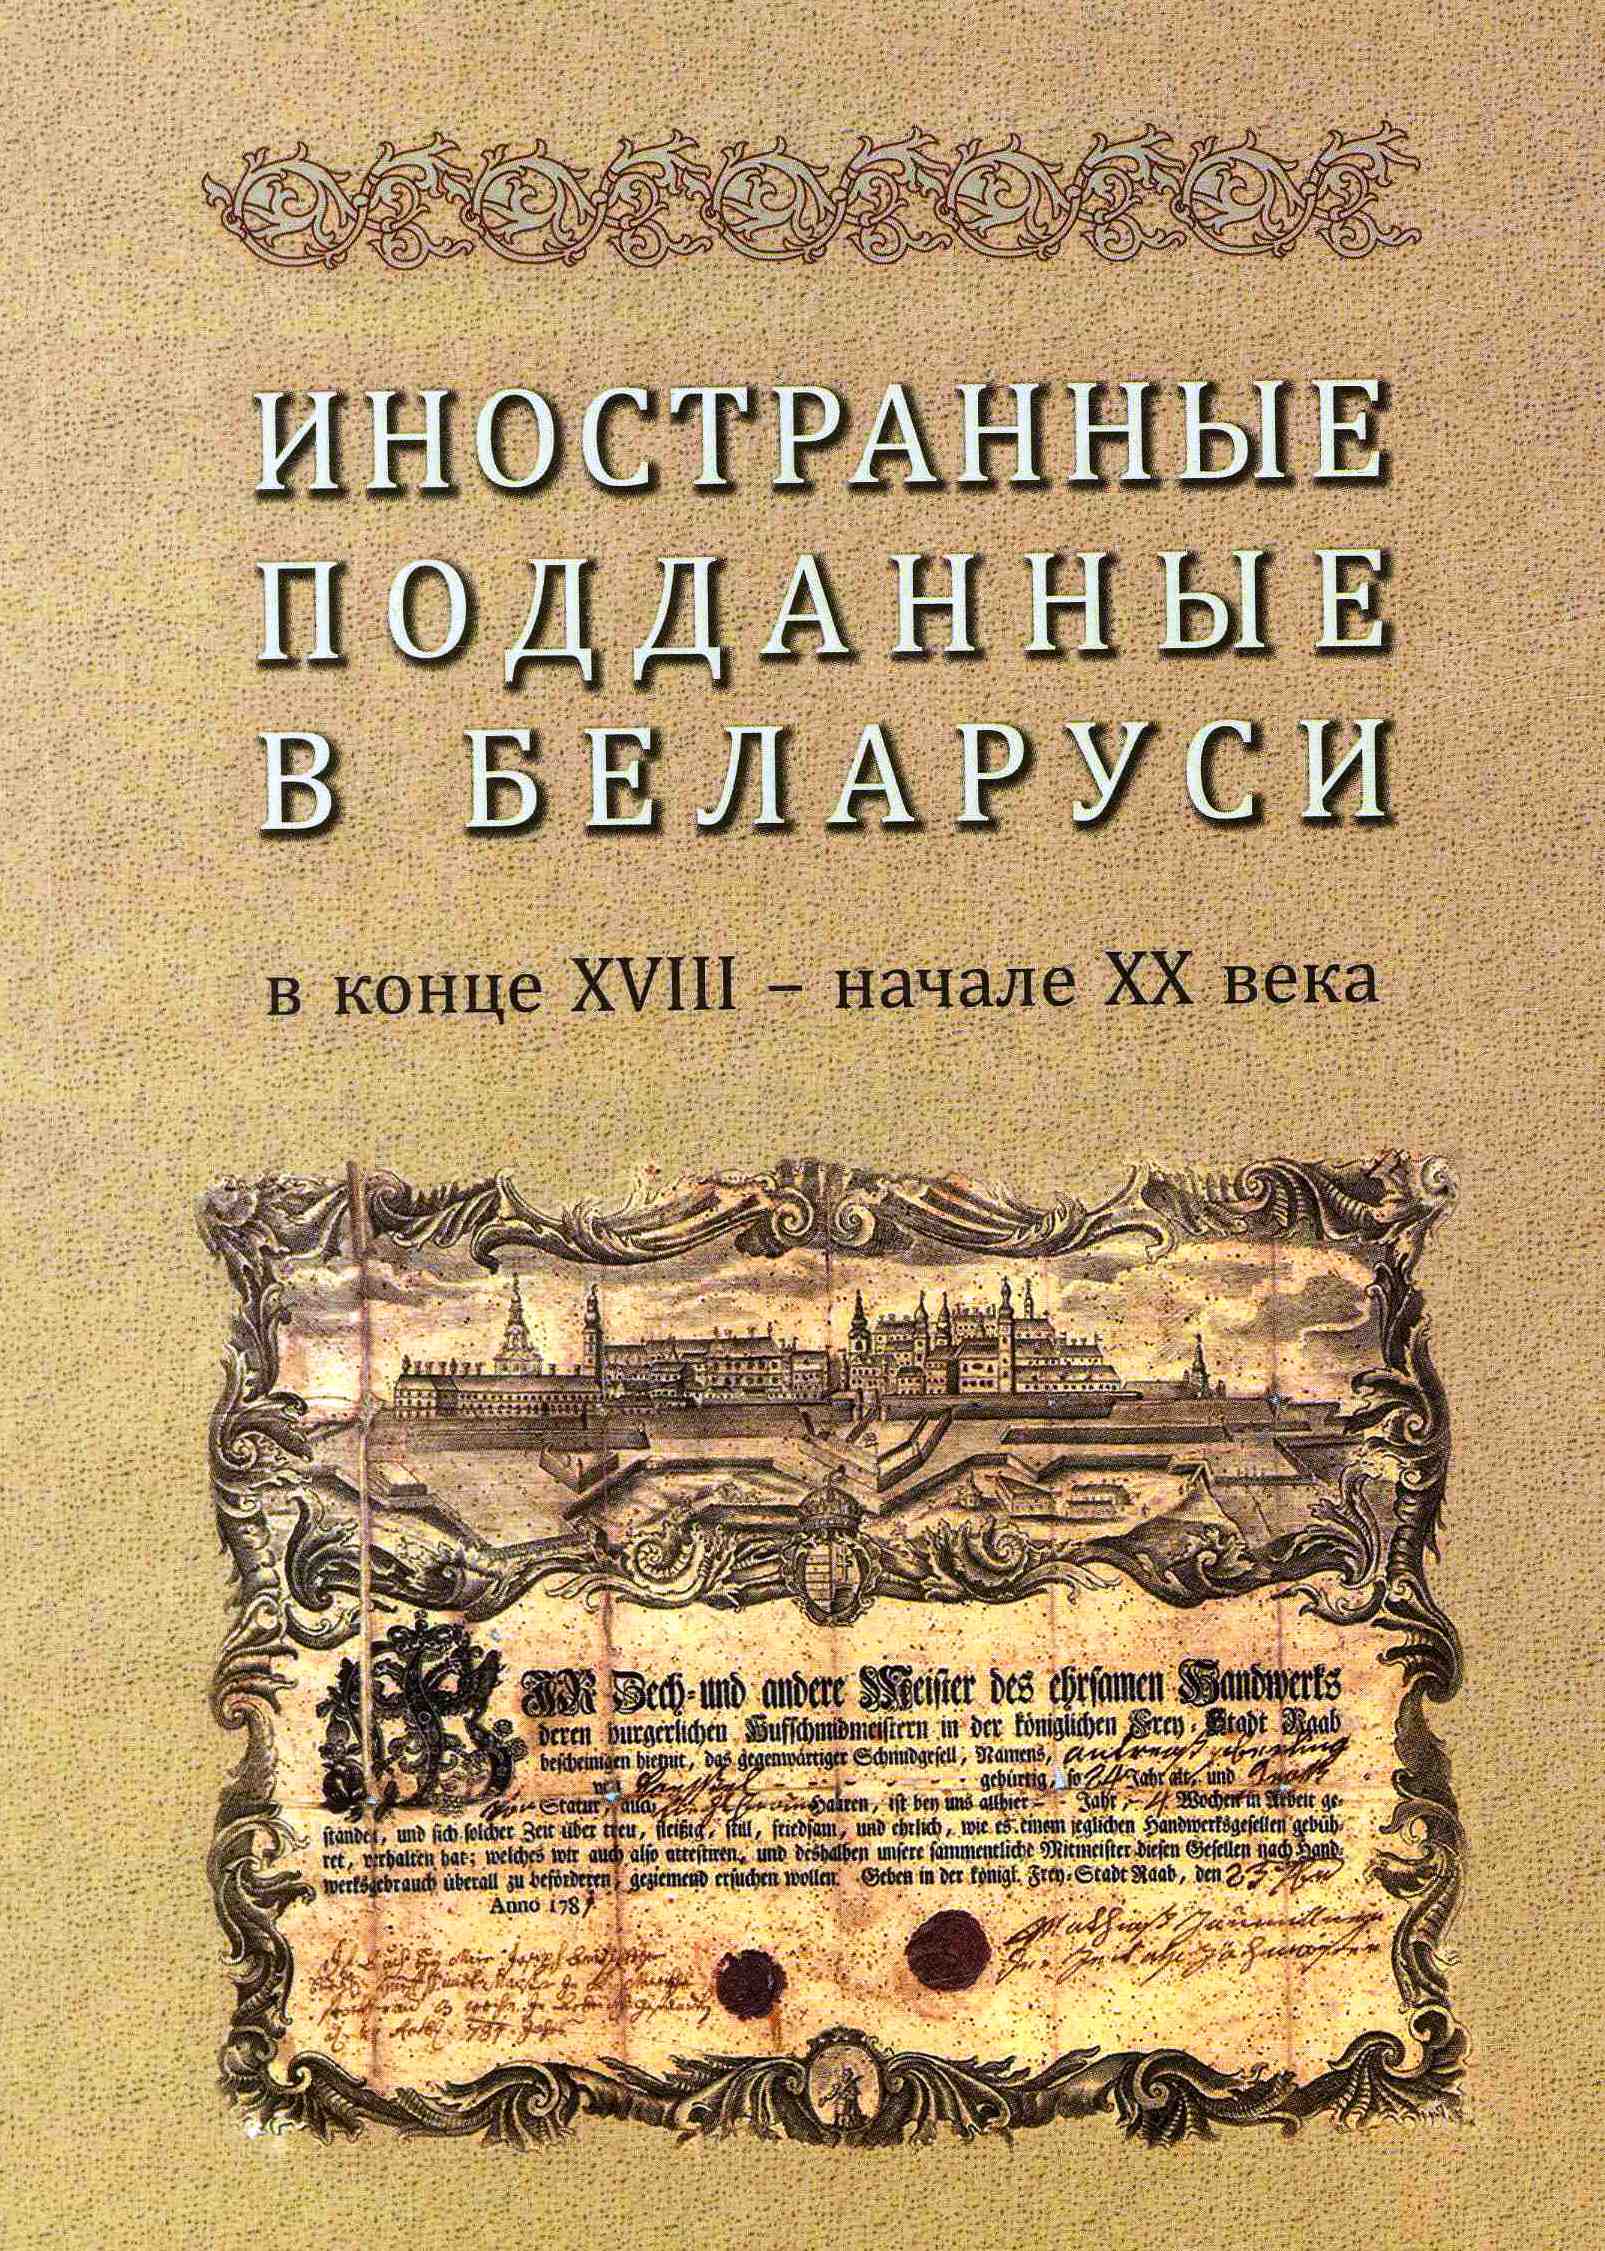 Обложка сборника «Беларусь и война 1812 года»